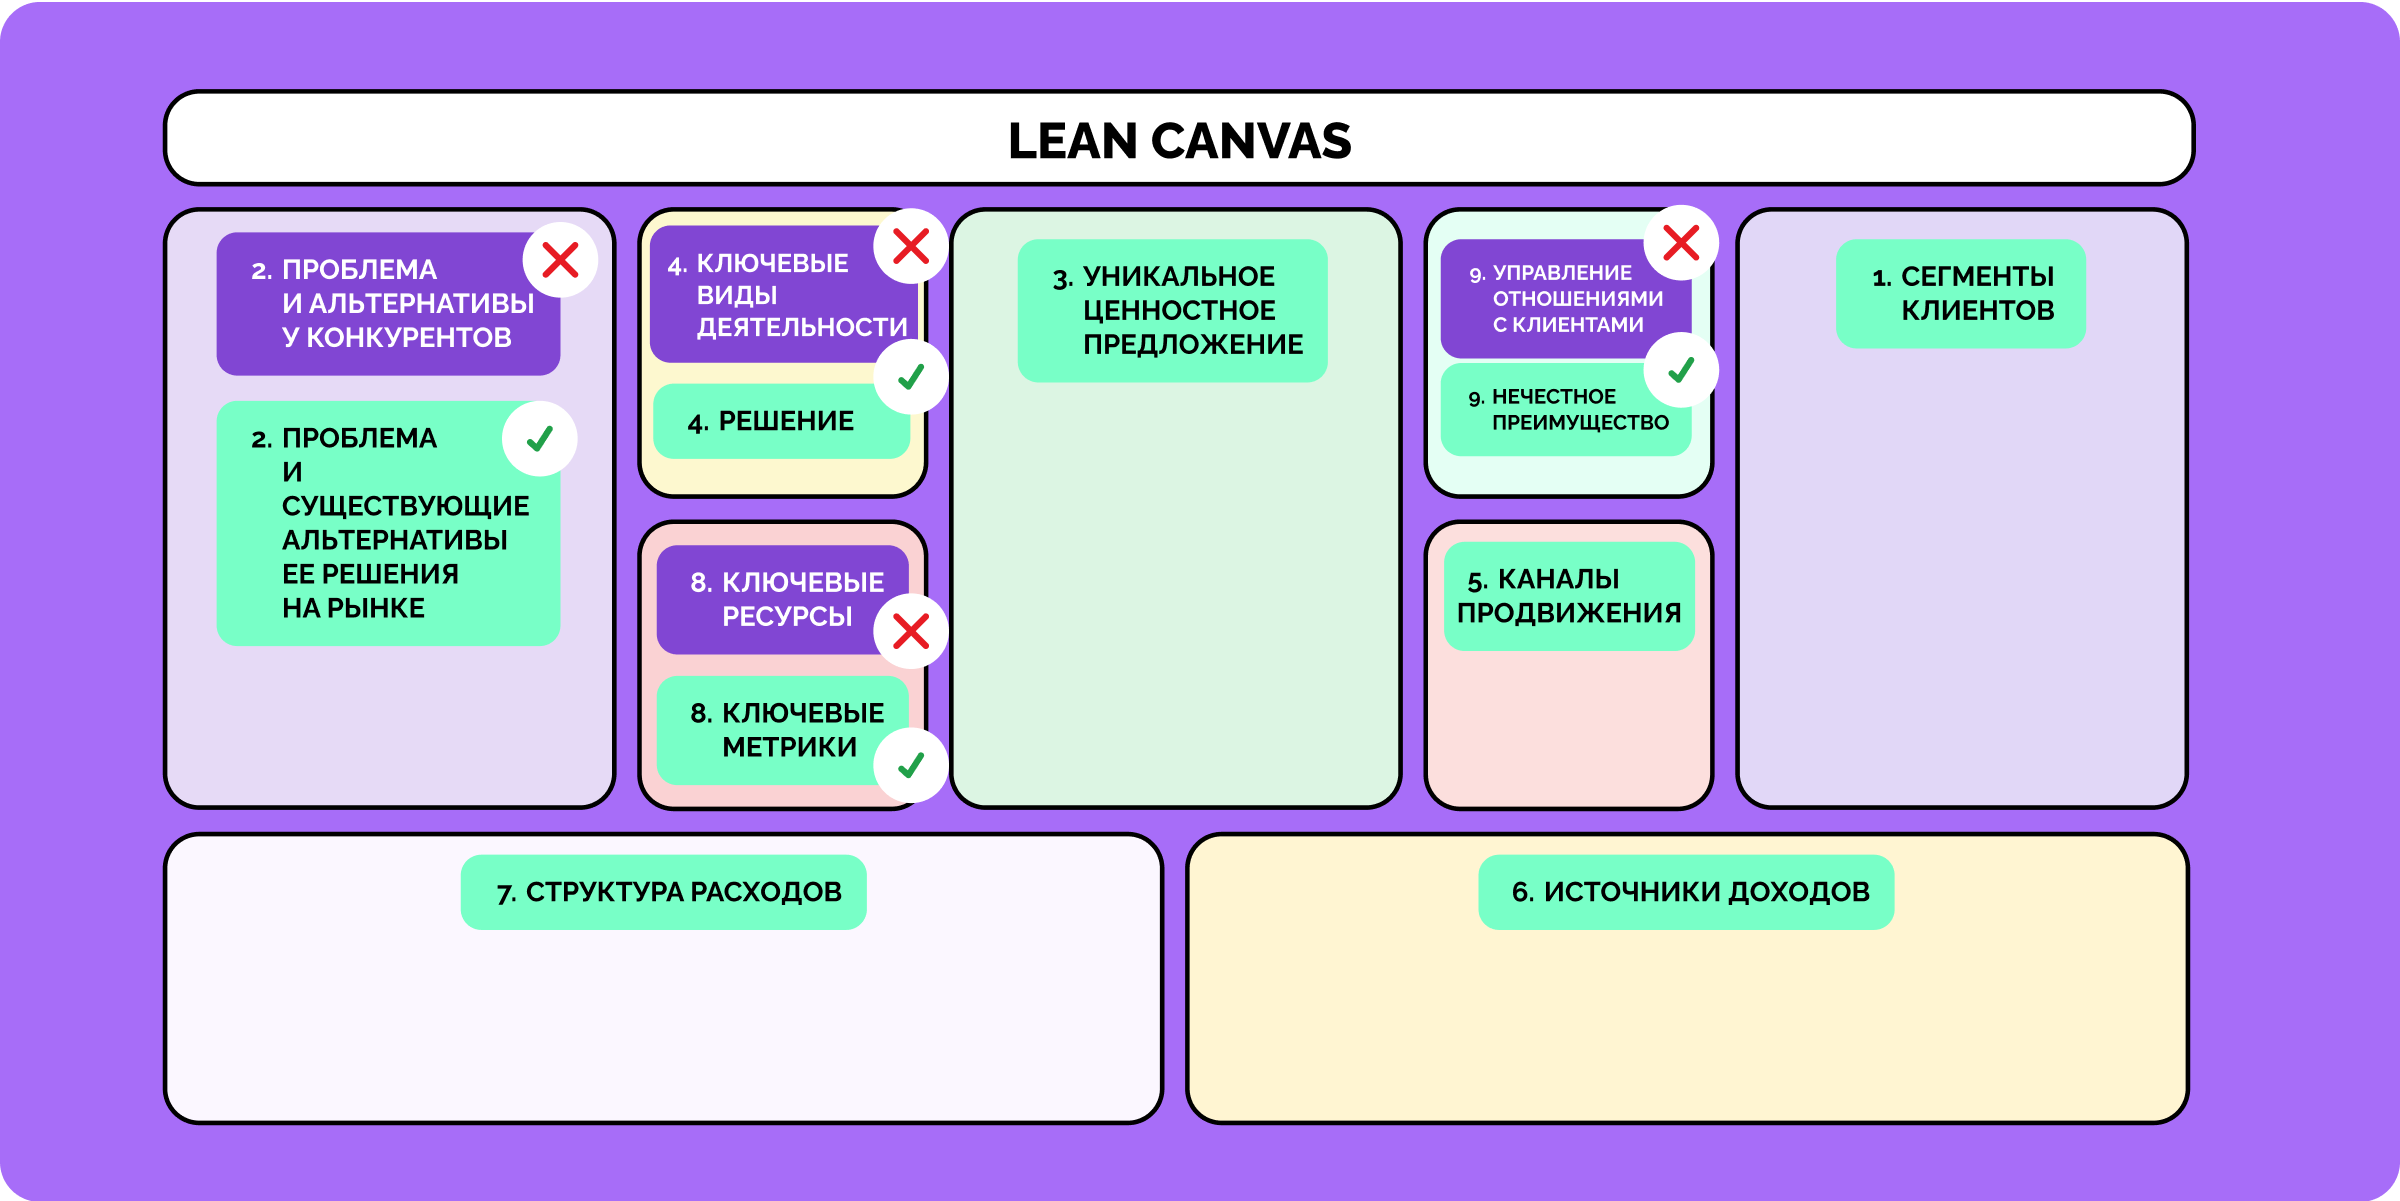 Таблица Остервальдера и шаблон Lean Canvas — в чем разница?